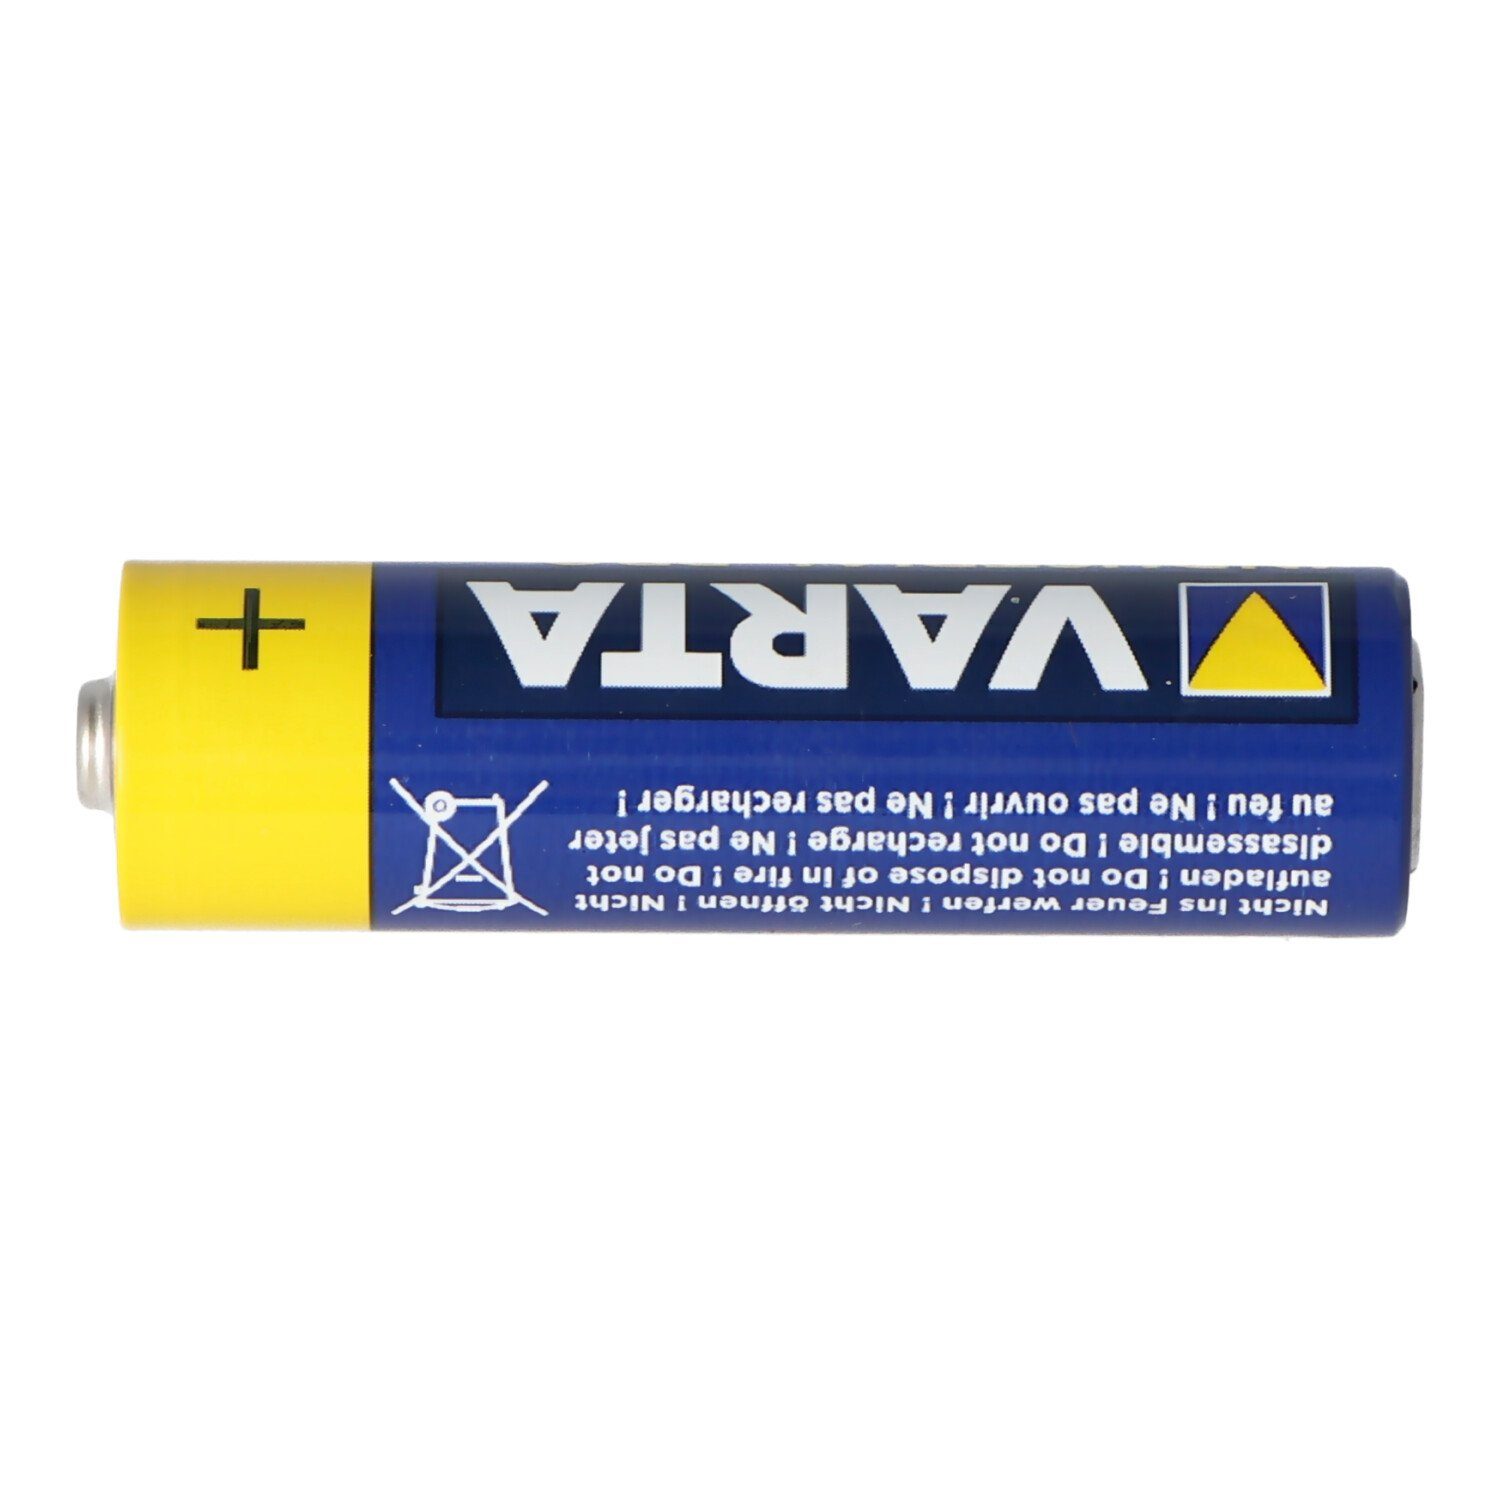 Mignon Industrial (1,5 4006 VARTA Varta Stück Batterie, LR06 1 V) Batterie